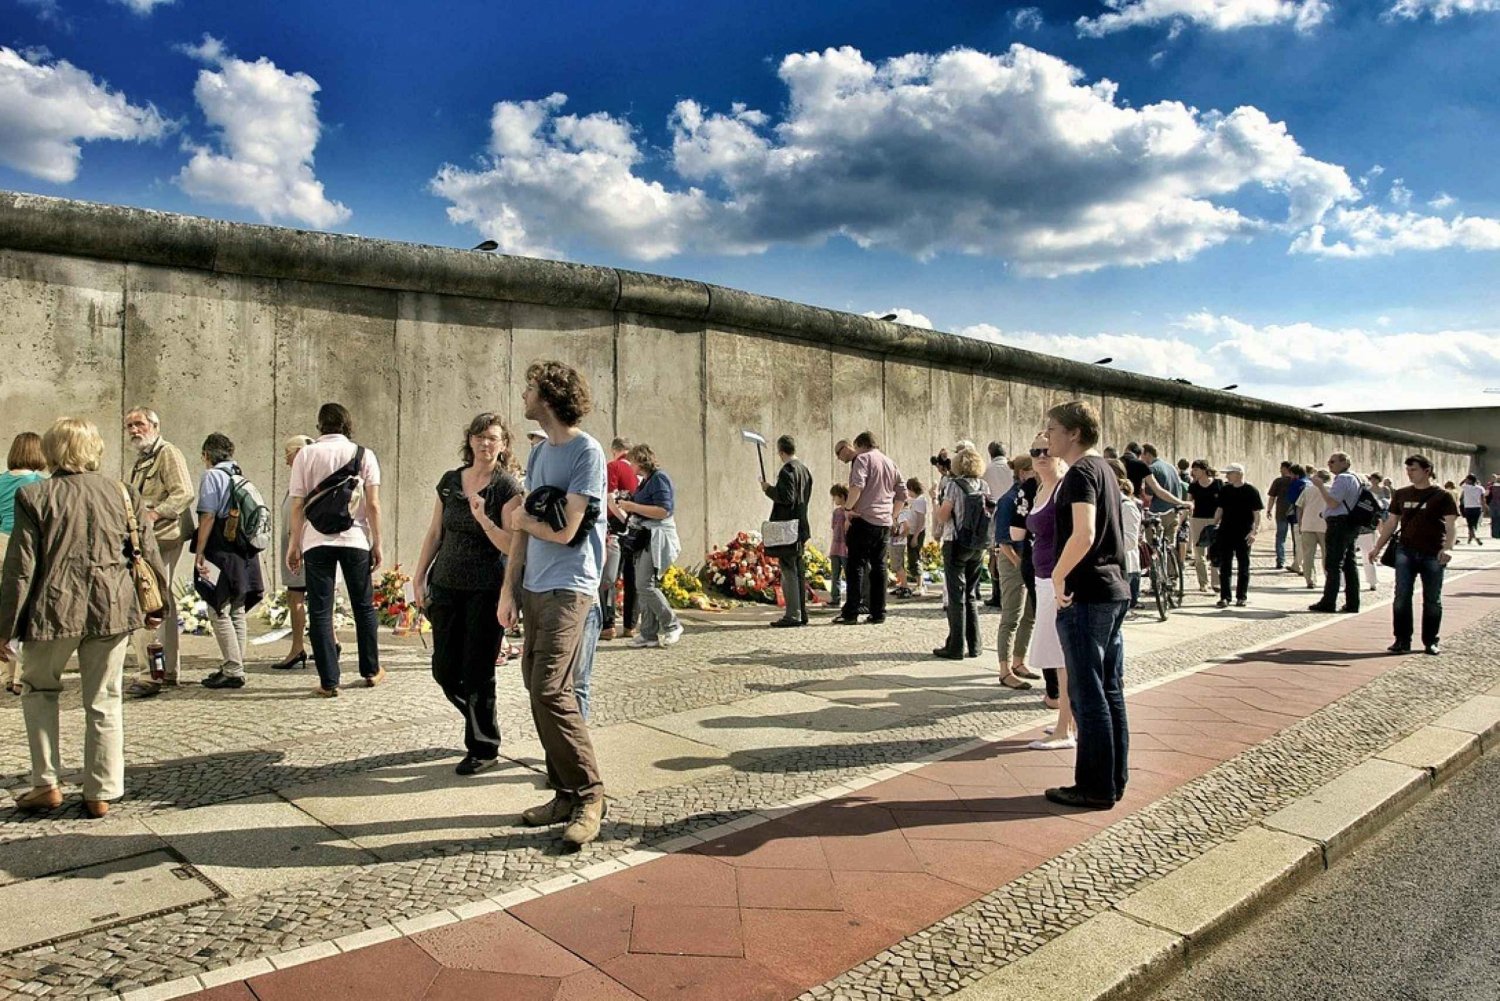 Berlin: Berlin Wall Memorial Self-Guided Audio Tour